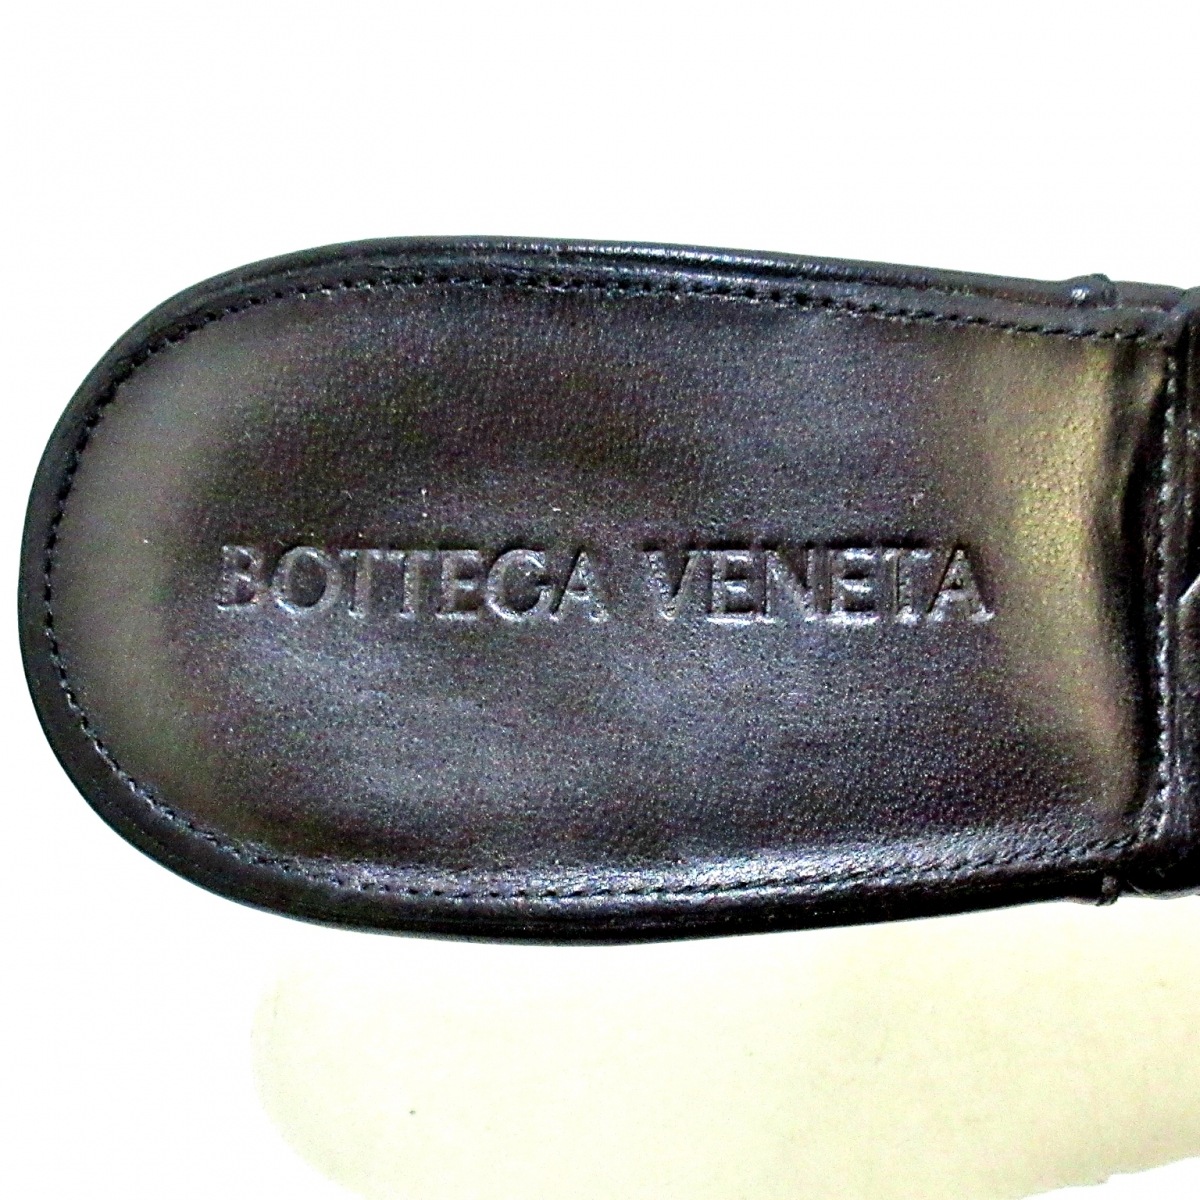 ボッテガヴェネタ BOTTEGA VENETA ミュール 36 リド 黒 セール価格でお